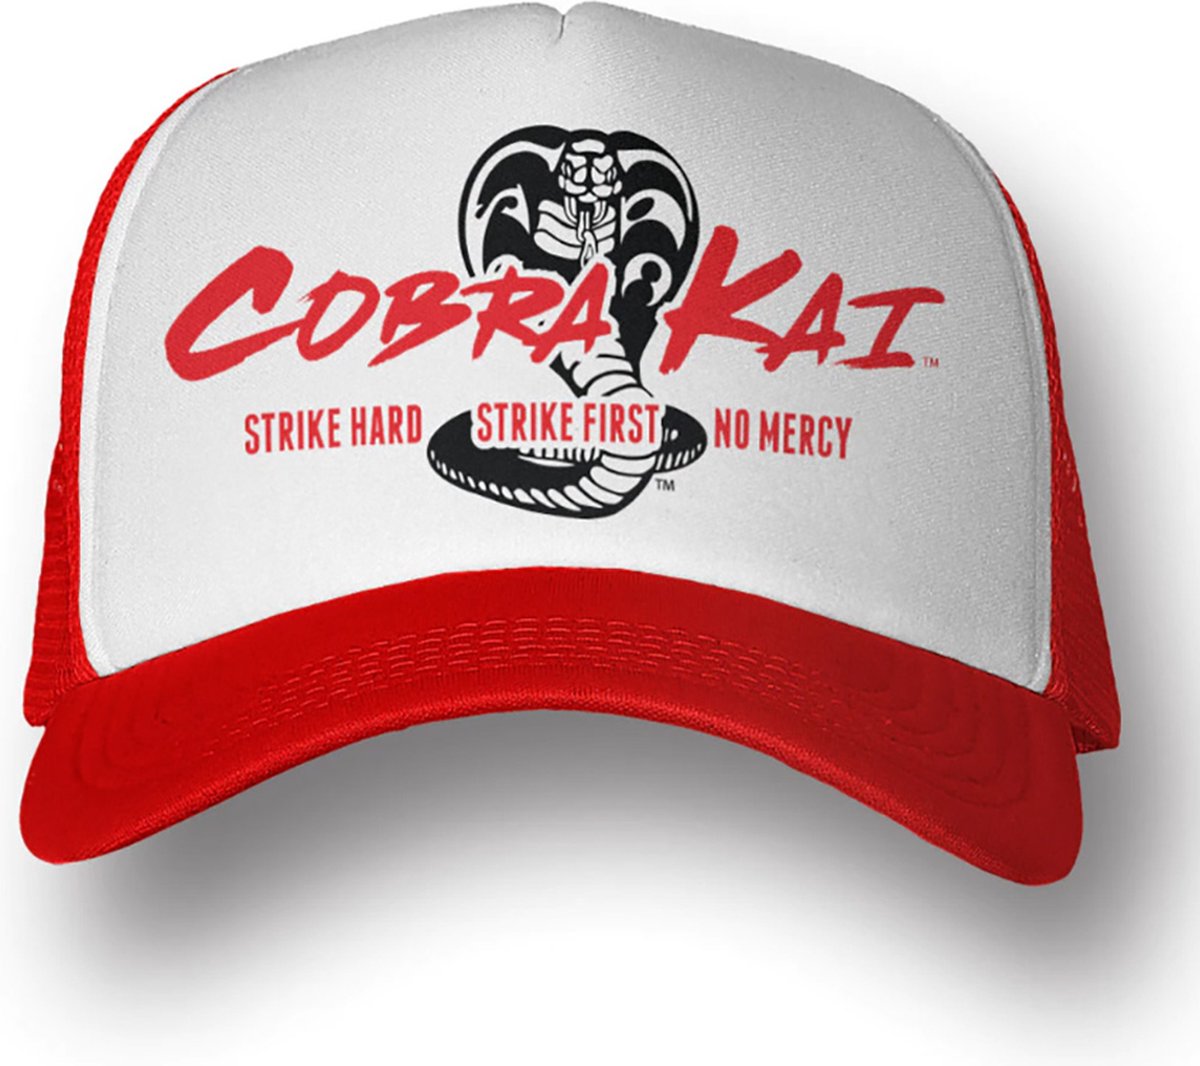 Cobra Kai - Trucker Cap